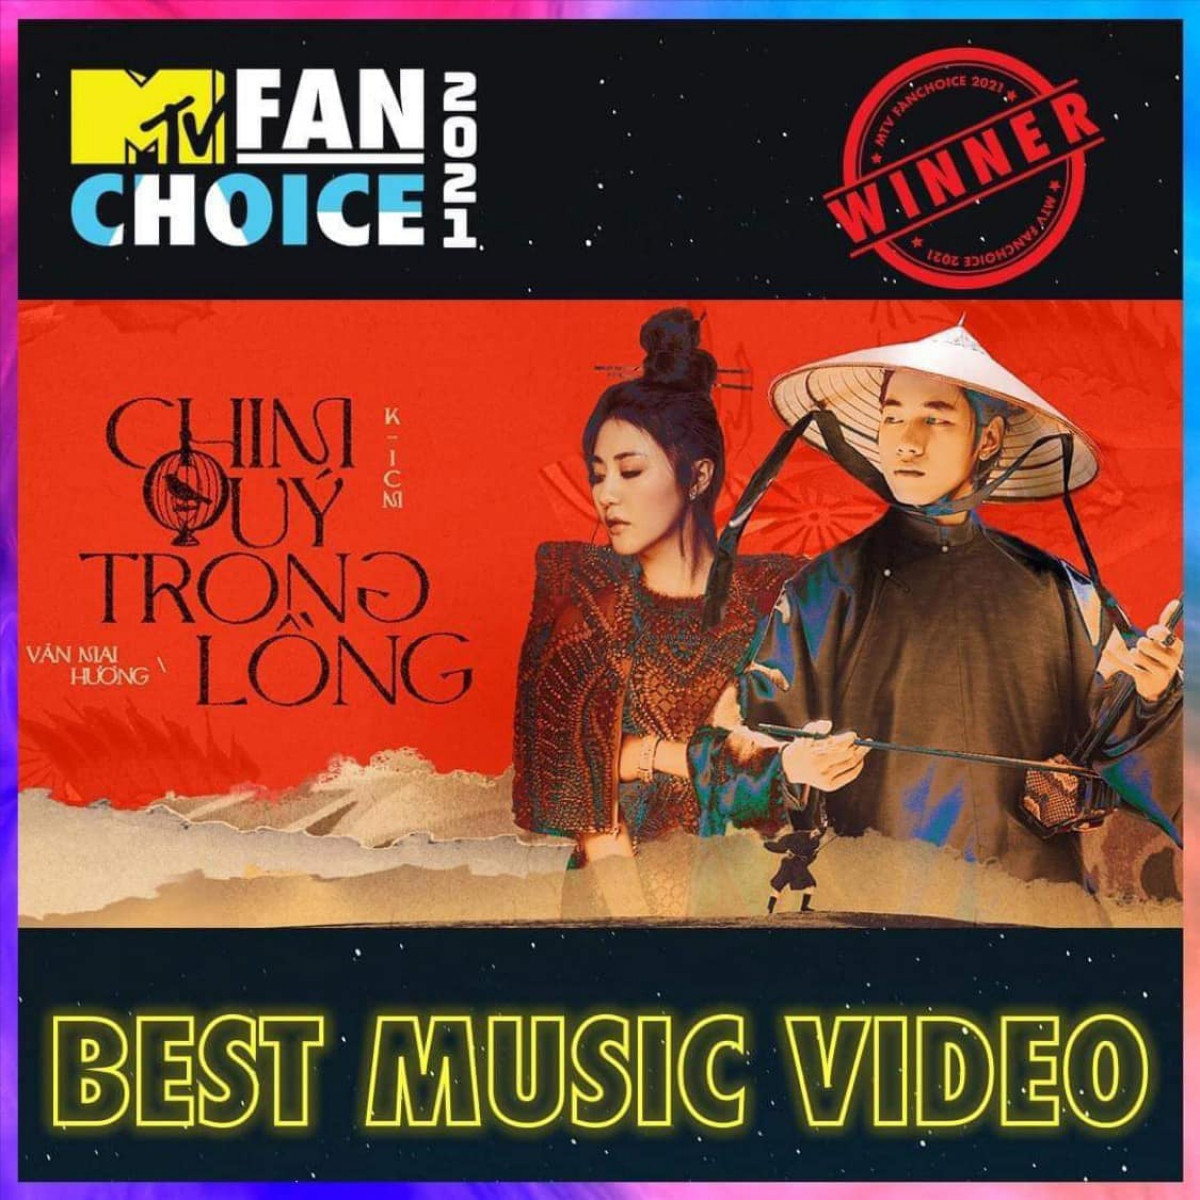 “Chim quý trong lồng” chiến thắng tại hạng mục “Best Music Video - Sản phẩm âm nhạc hay nhất” trong cuộc bình chọn của chiến dịch MTV FAN CHOICE 2021.